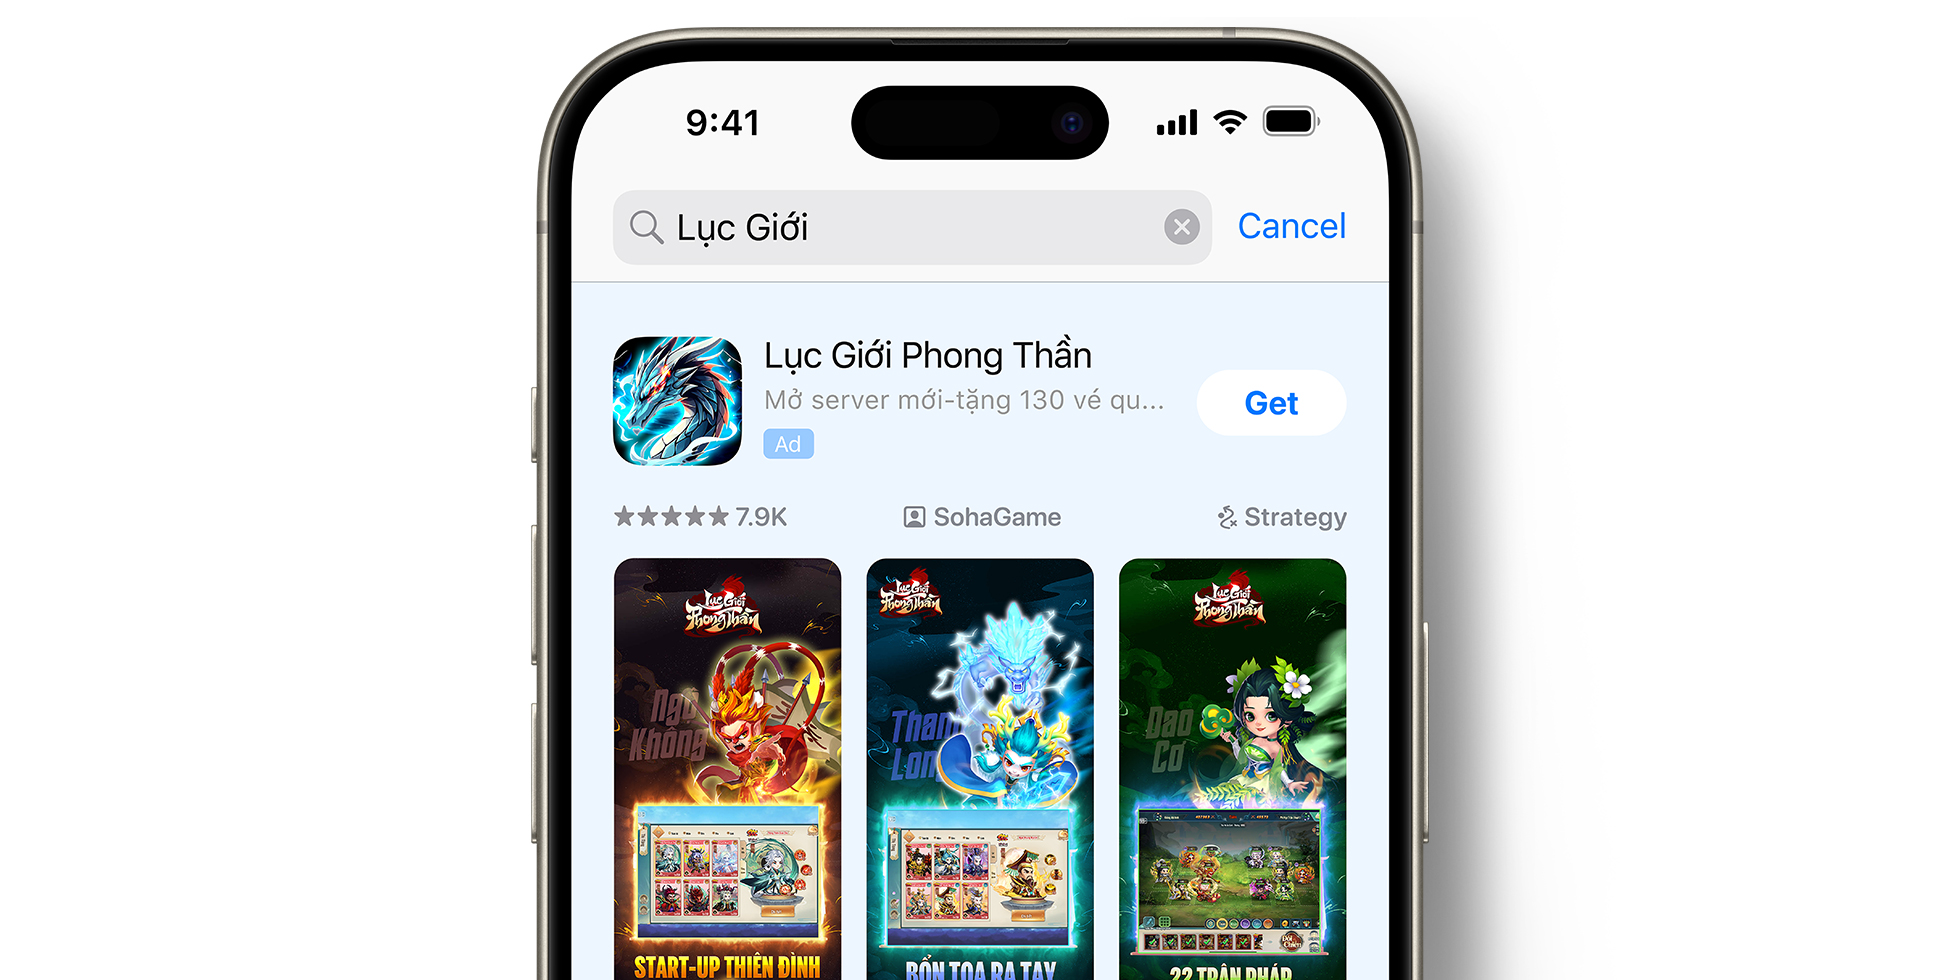 Anzeige von Long Thần Lục Giới im App Store